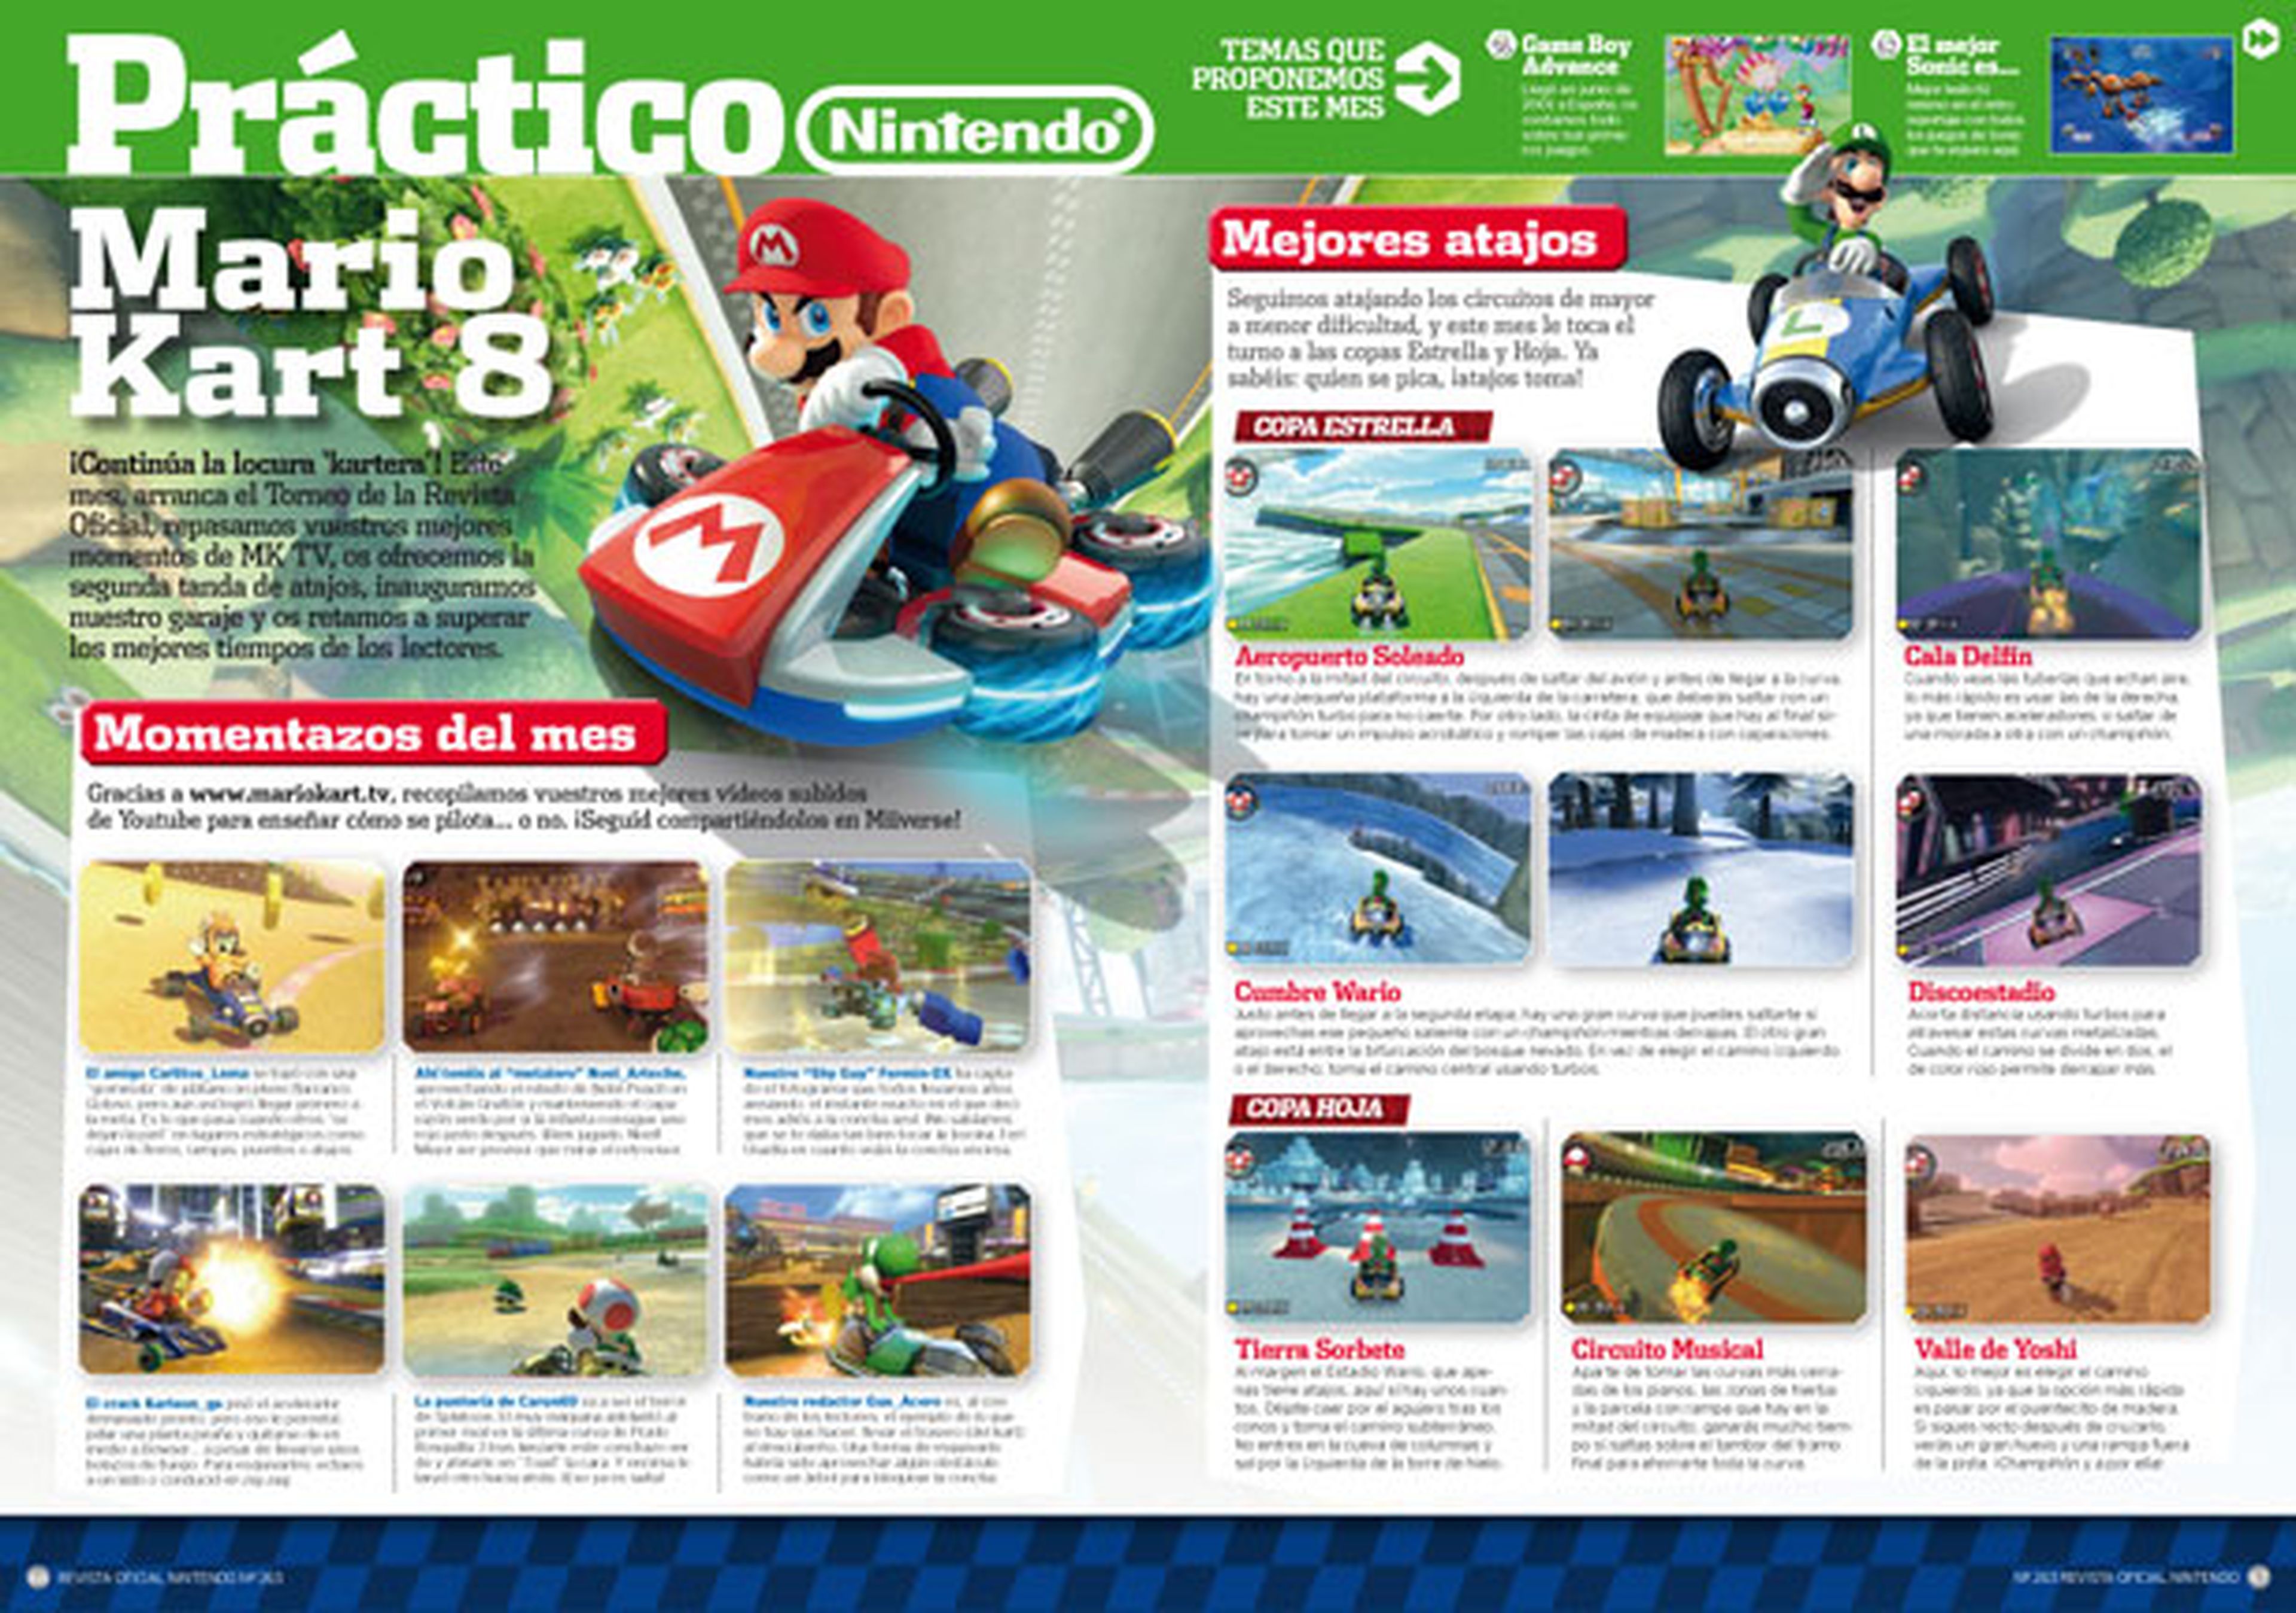 Ya a la venta Revista Oficial Nintendo 263